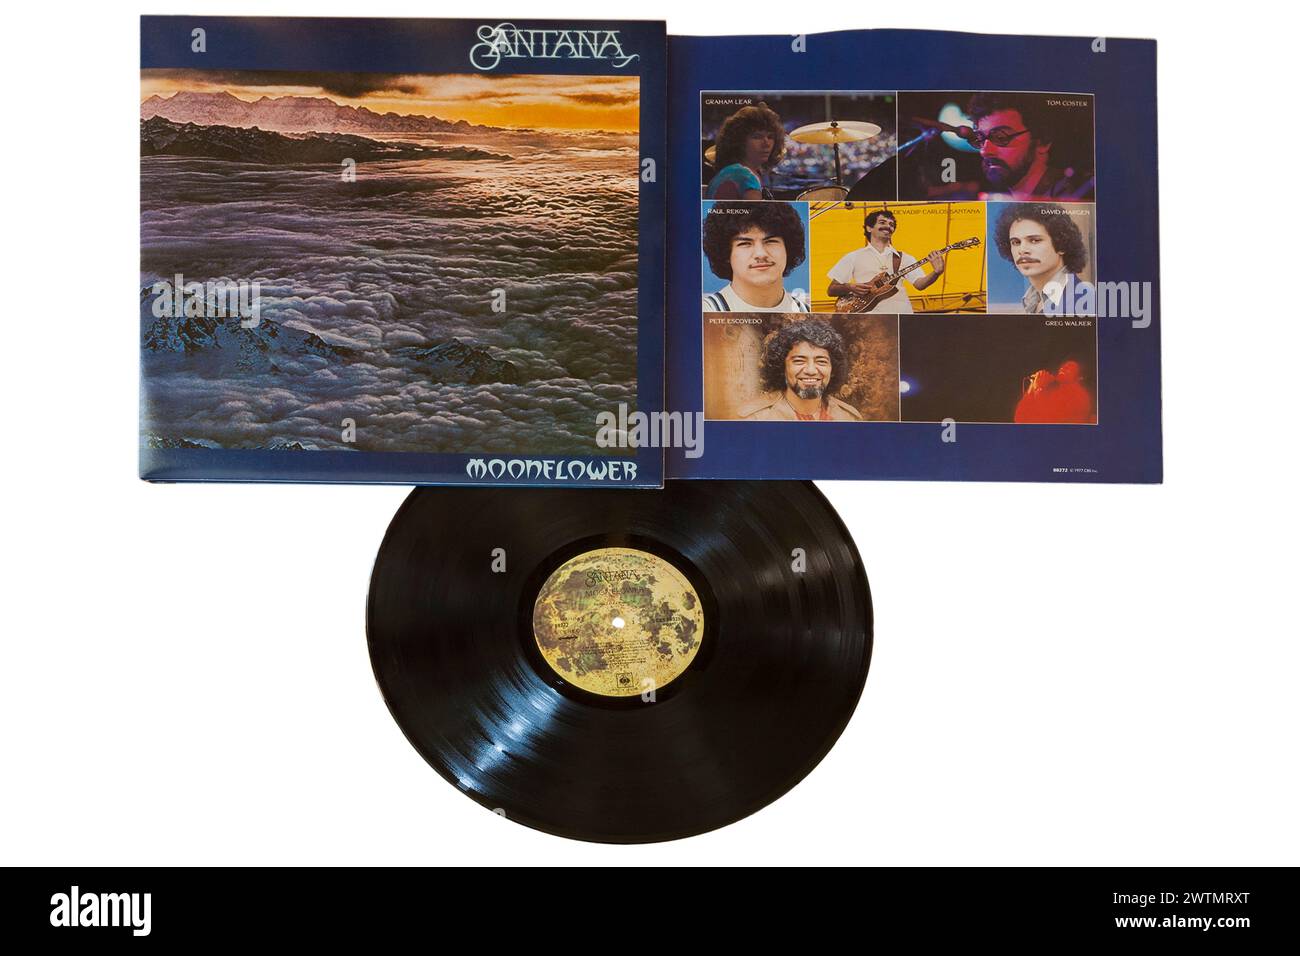 Santana Moonflower Vinyl-Album-Cover isoliert auf weißem Hintergrund - 1977 Stockfoto